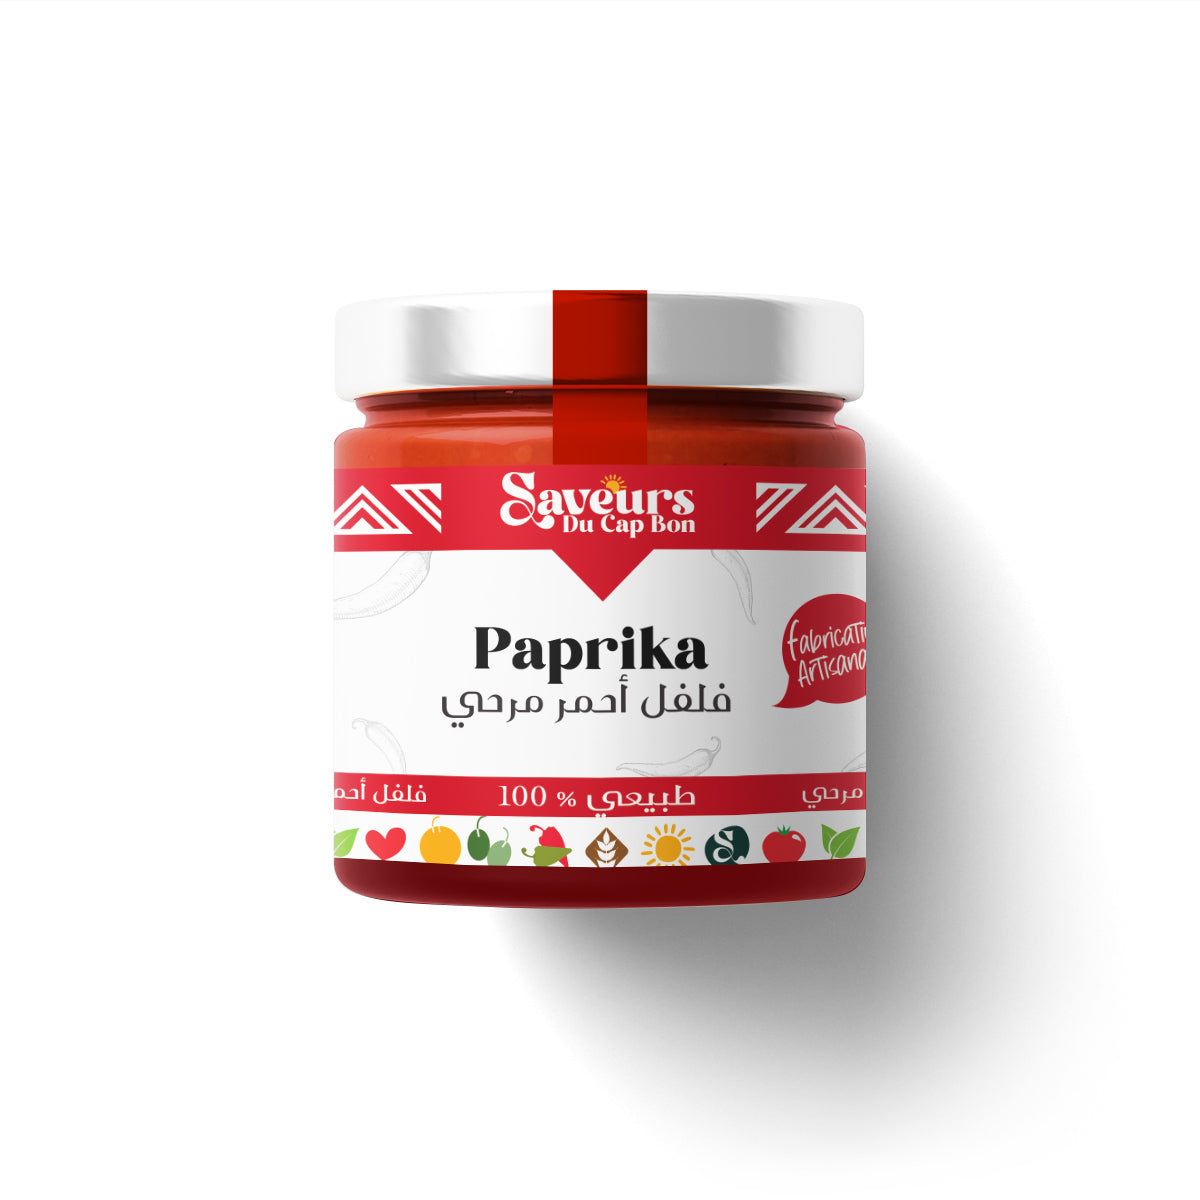 Paprika en pot, piment rouge - فلفل أحمر مرحي